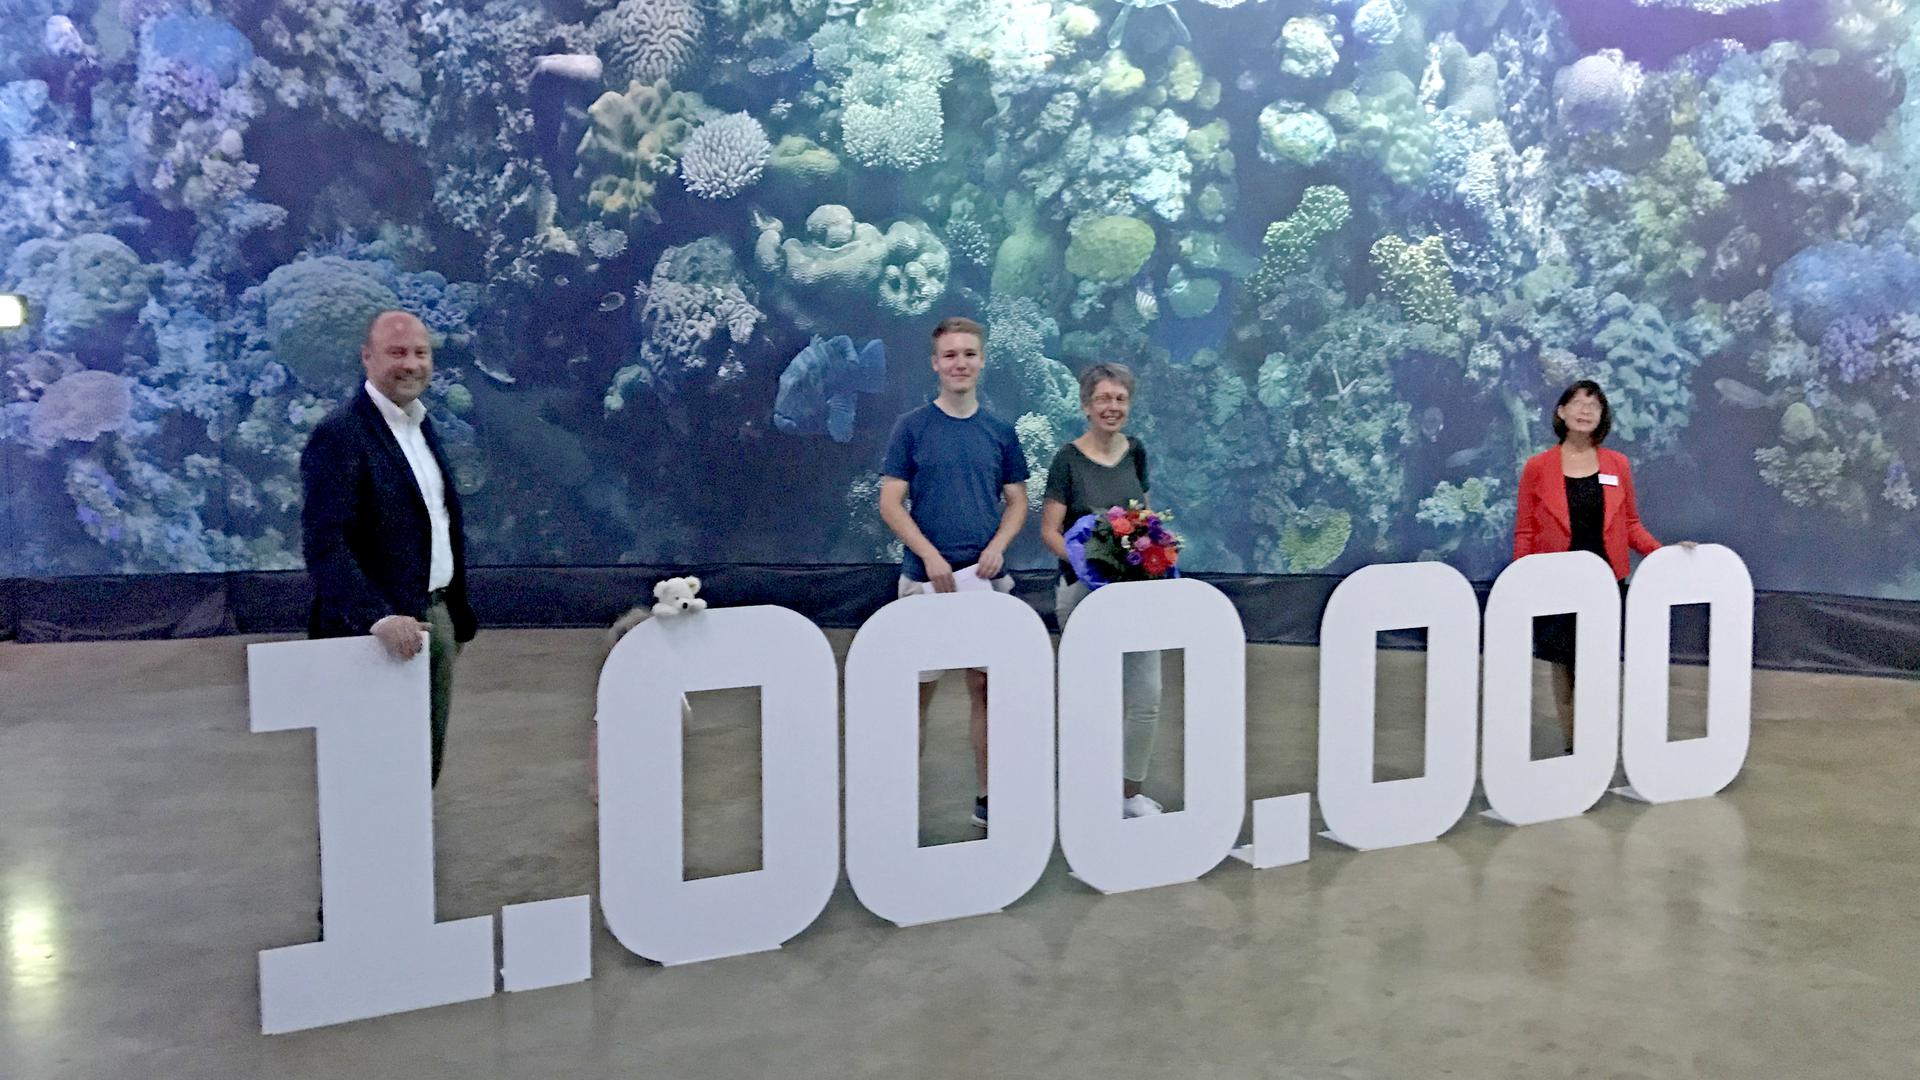 Mehrere Personen stehen hinter einer großen, aufgebauten 1.000.000. Im Hintergrund ist das Panorama mit dem Great Barrier Reef zu sehen.